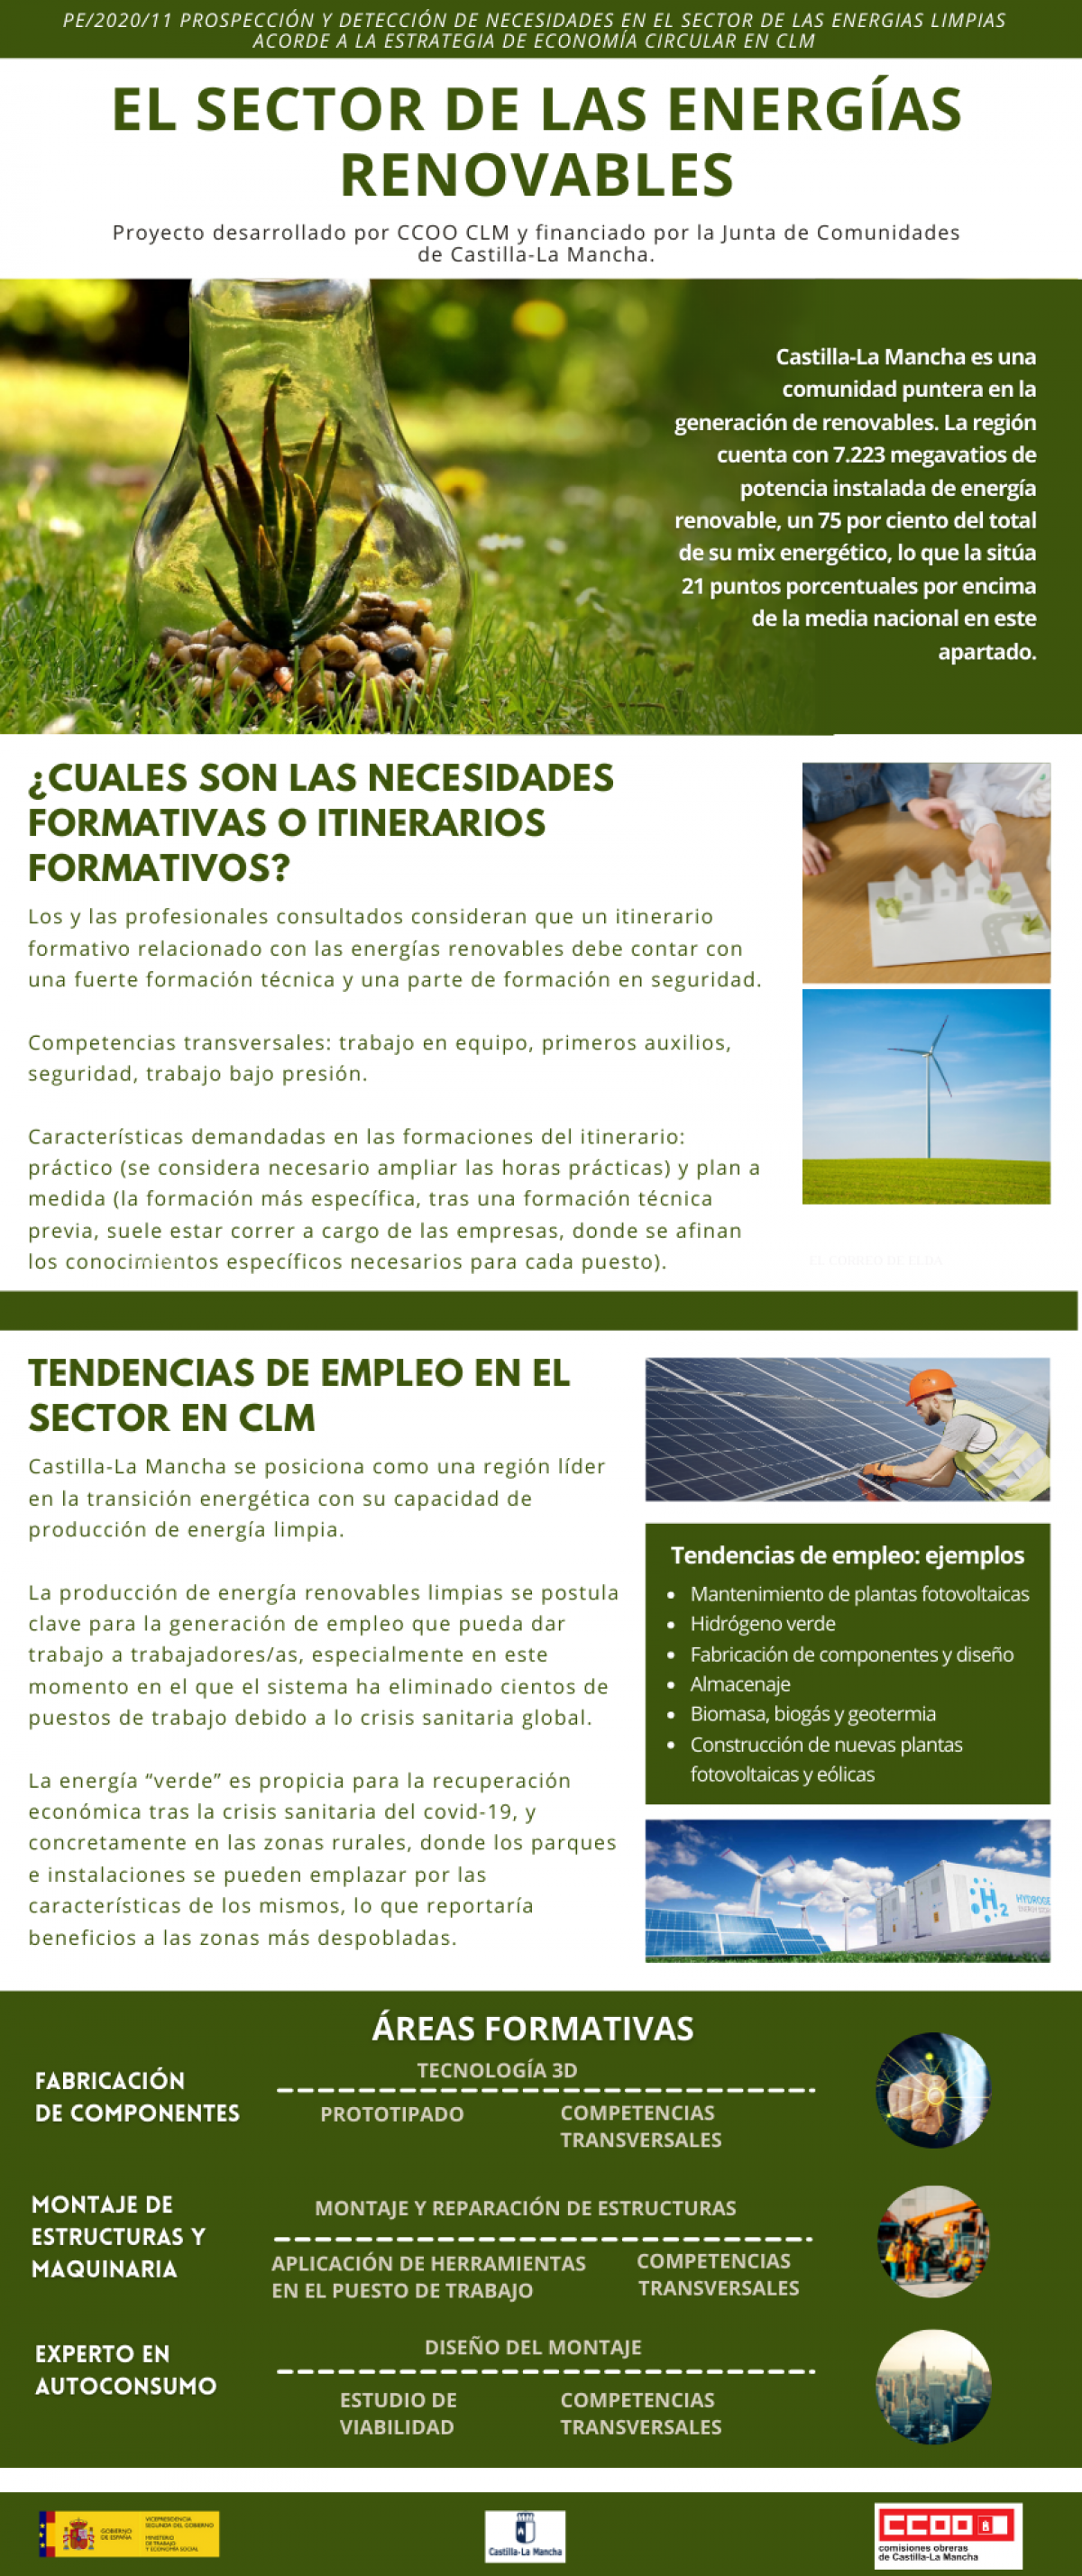 Newsletter sobre el sector de las energías renovables